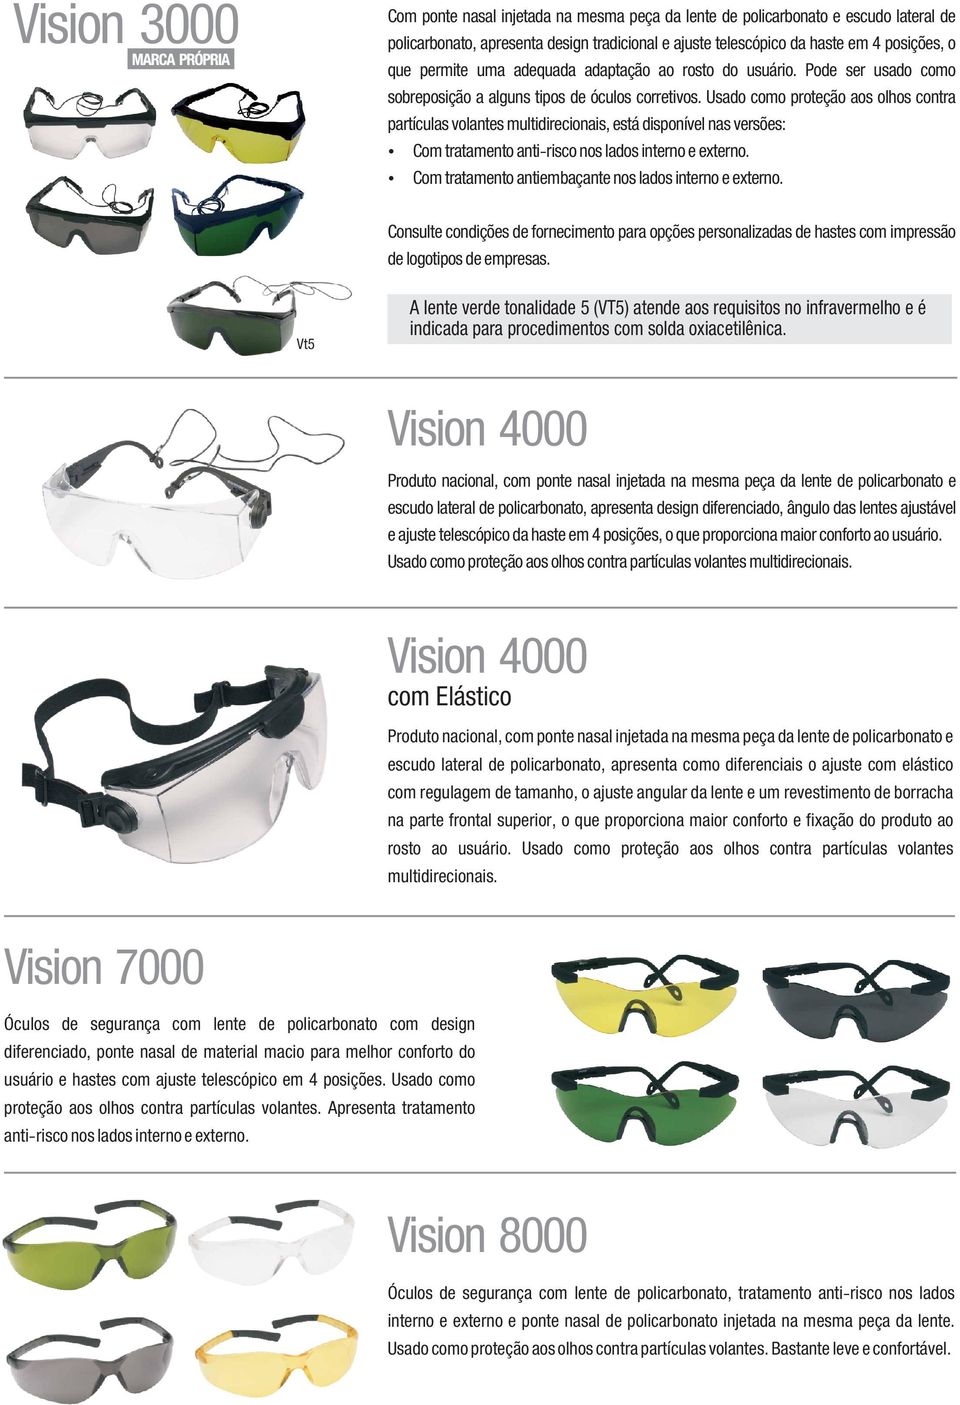 Usado como proteção aos olhos contra partículas volantes multidirecionais, está disponível nas versões: Com tratamento anti-risco nos lados interno e externo.